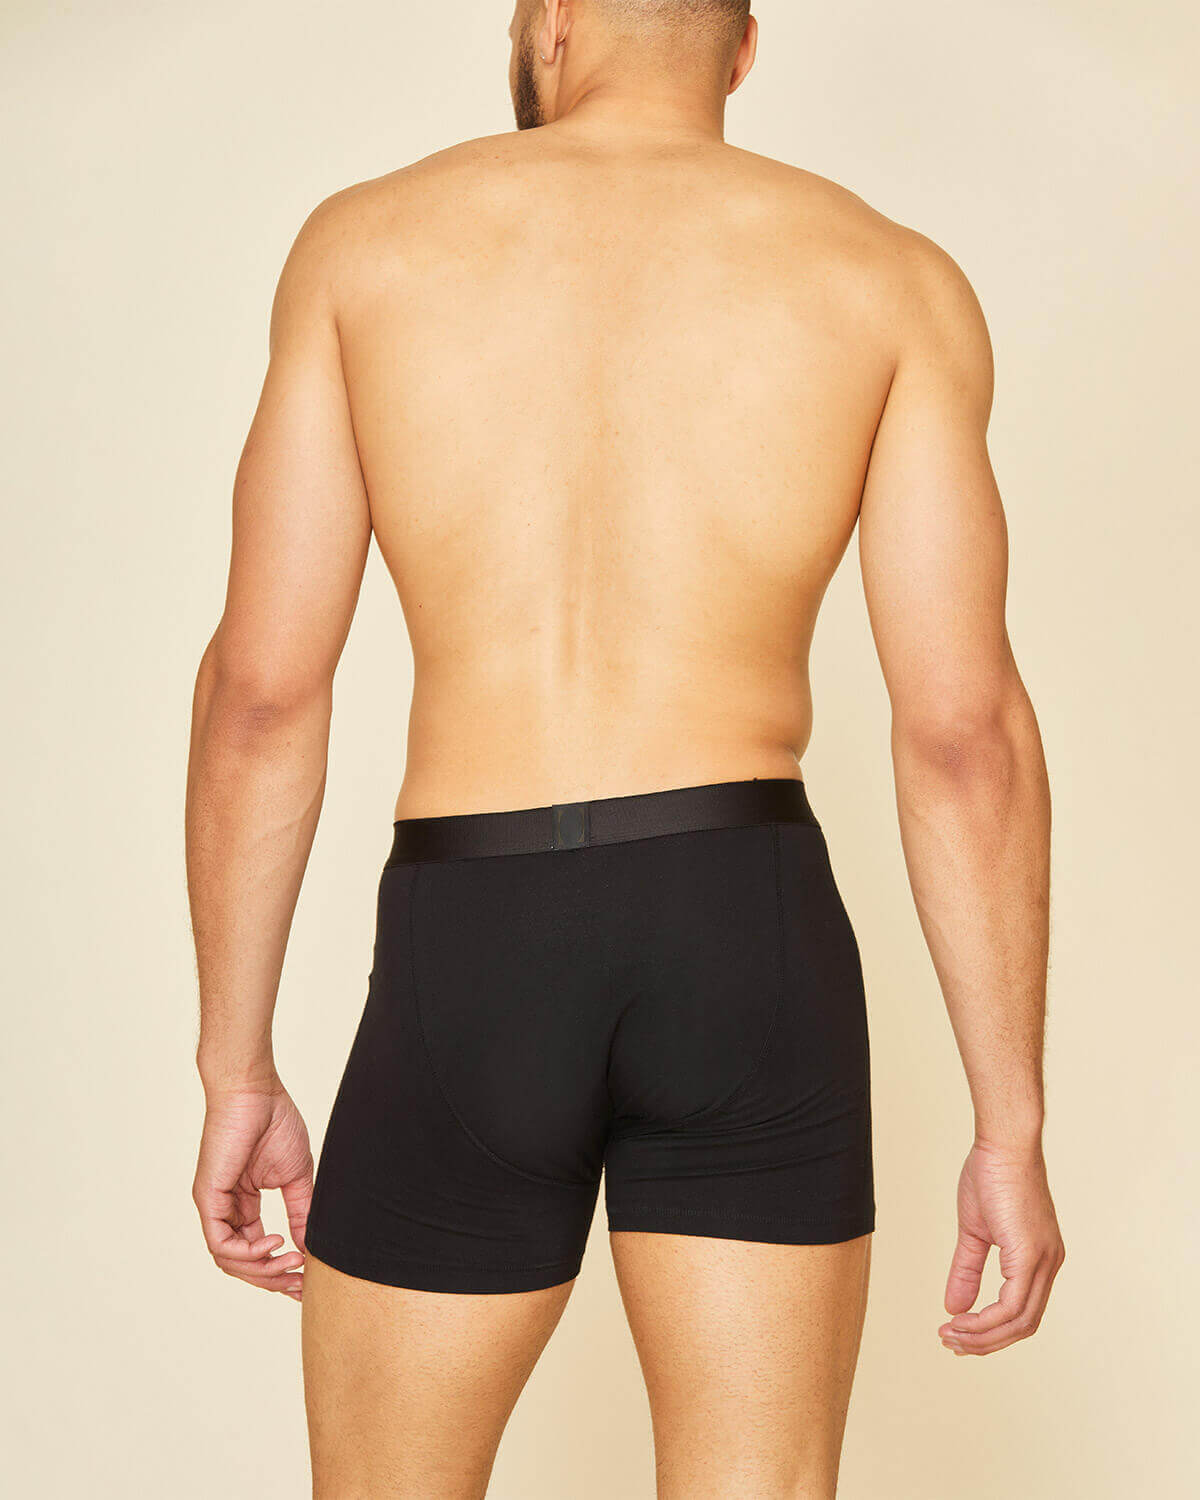 100% Organic Cotton Boxer Briefs Mens Underwear Natural Soft